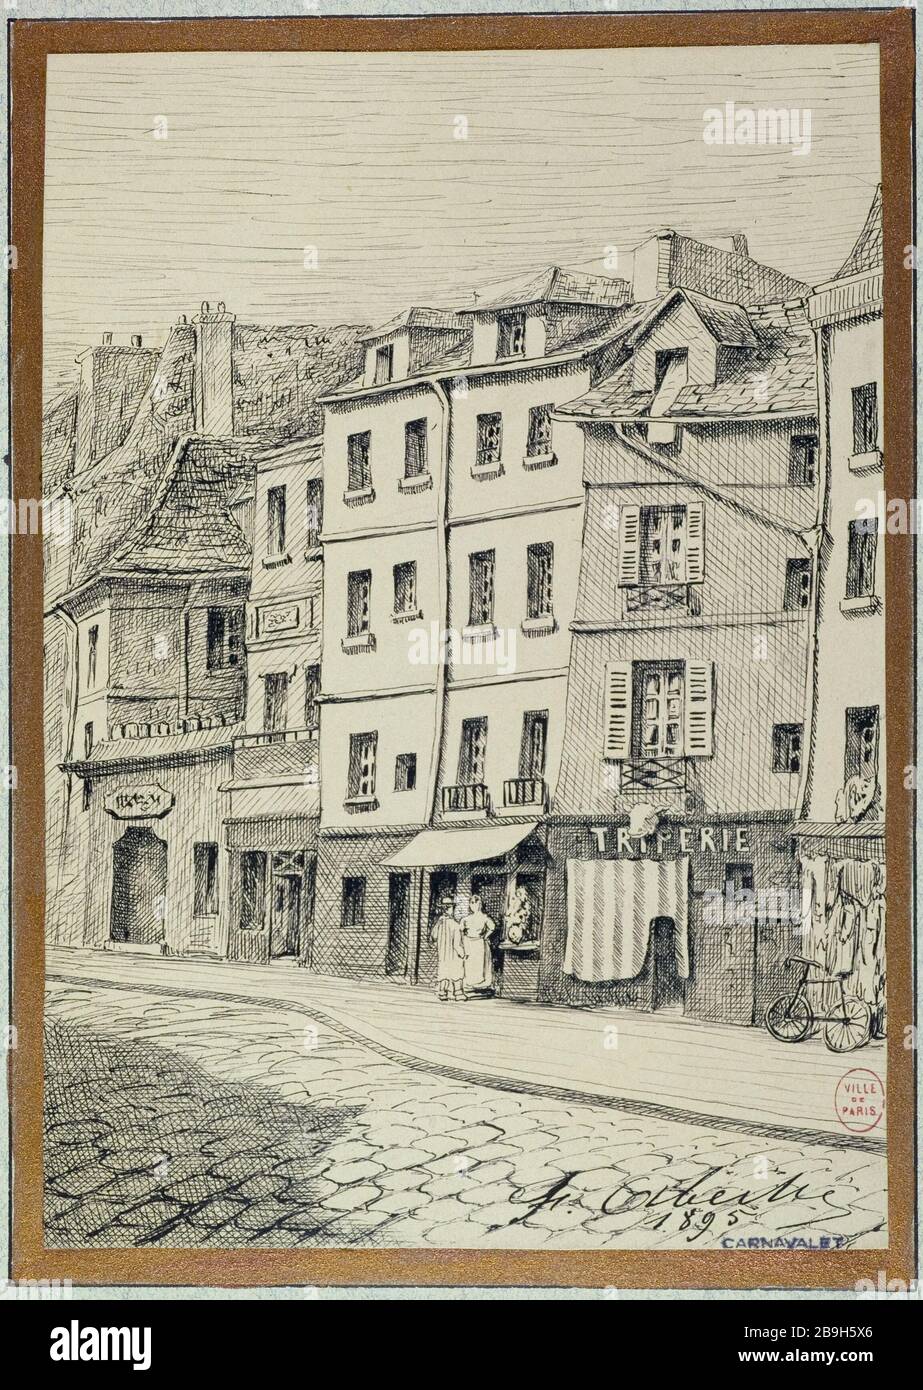 PLATZ LACEPEDE, 1895 F. ABEILÉ. "Place Lacépède, 1895". Pflaume, Encre de Chine, im Jahr 1895. Paris, musée Carnavalet. Stockfoto